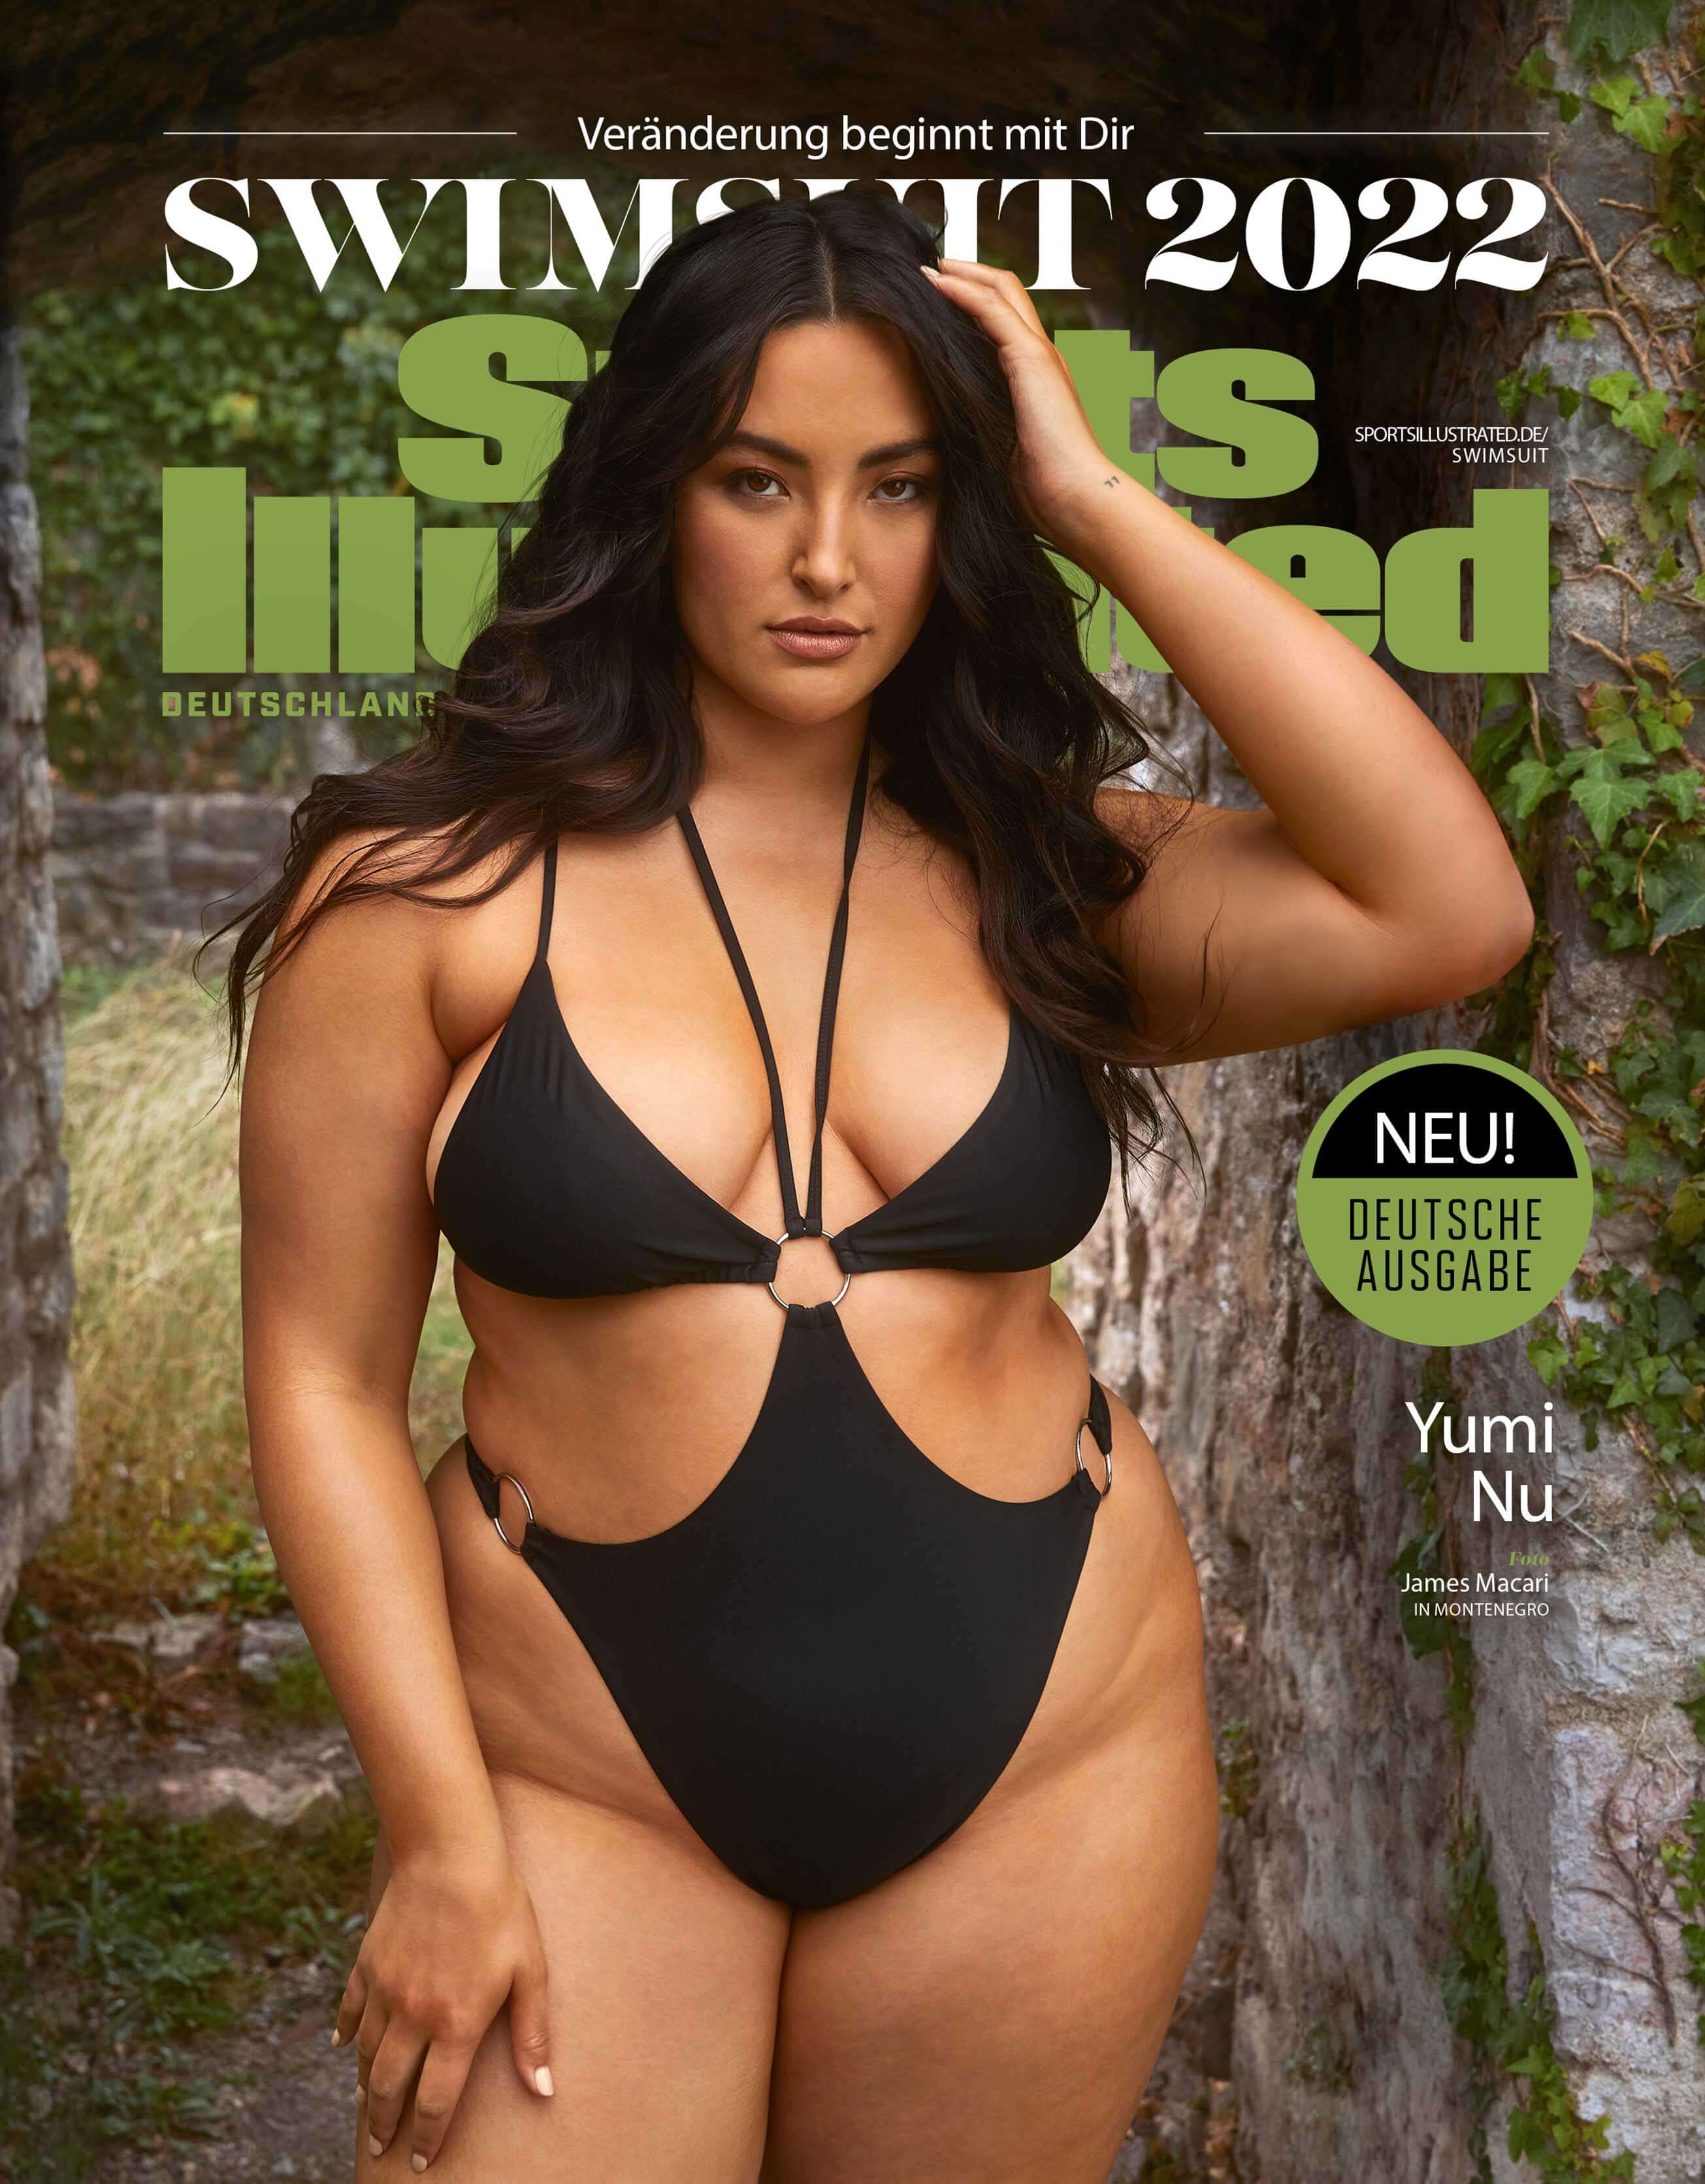 Ab dem 13.6. auch als exklusive deutsche Ausgabe erhältlich: Die Swimsuit-Ausgabe von Sports Illustrated mit Cover Model Yumi Nu